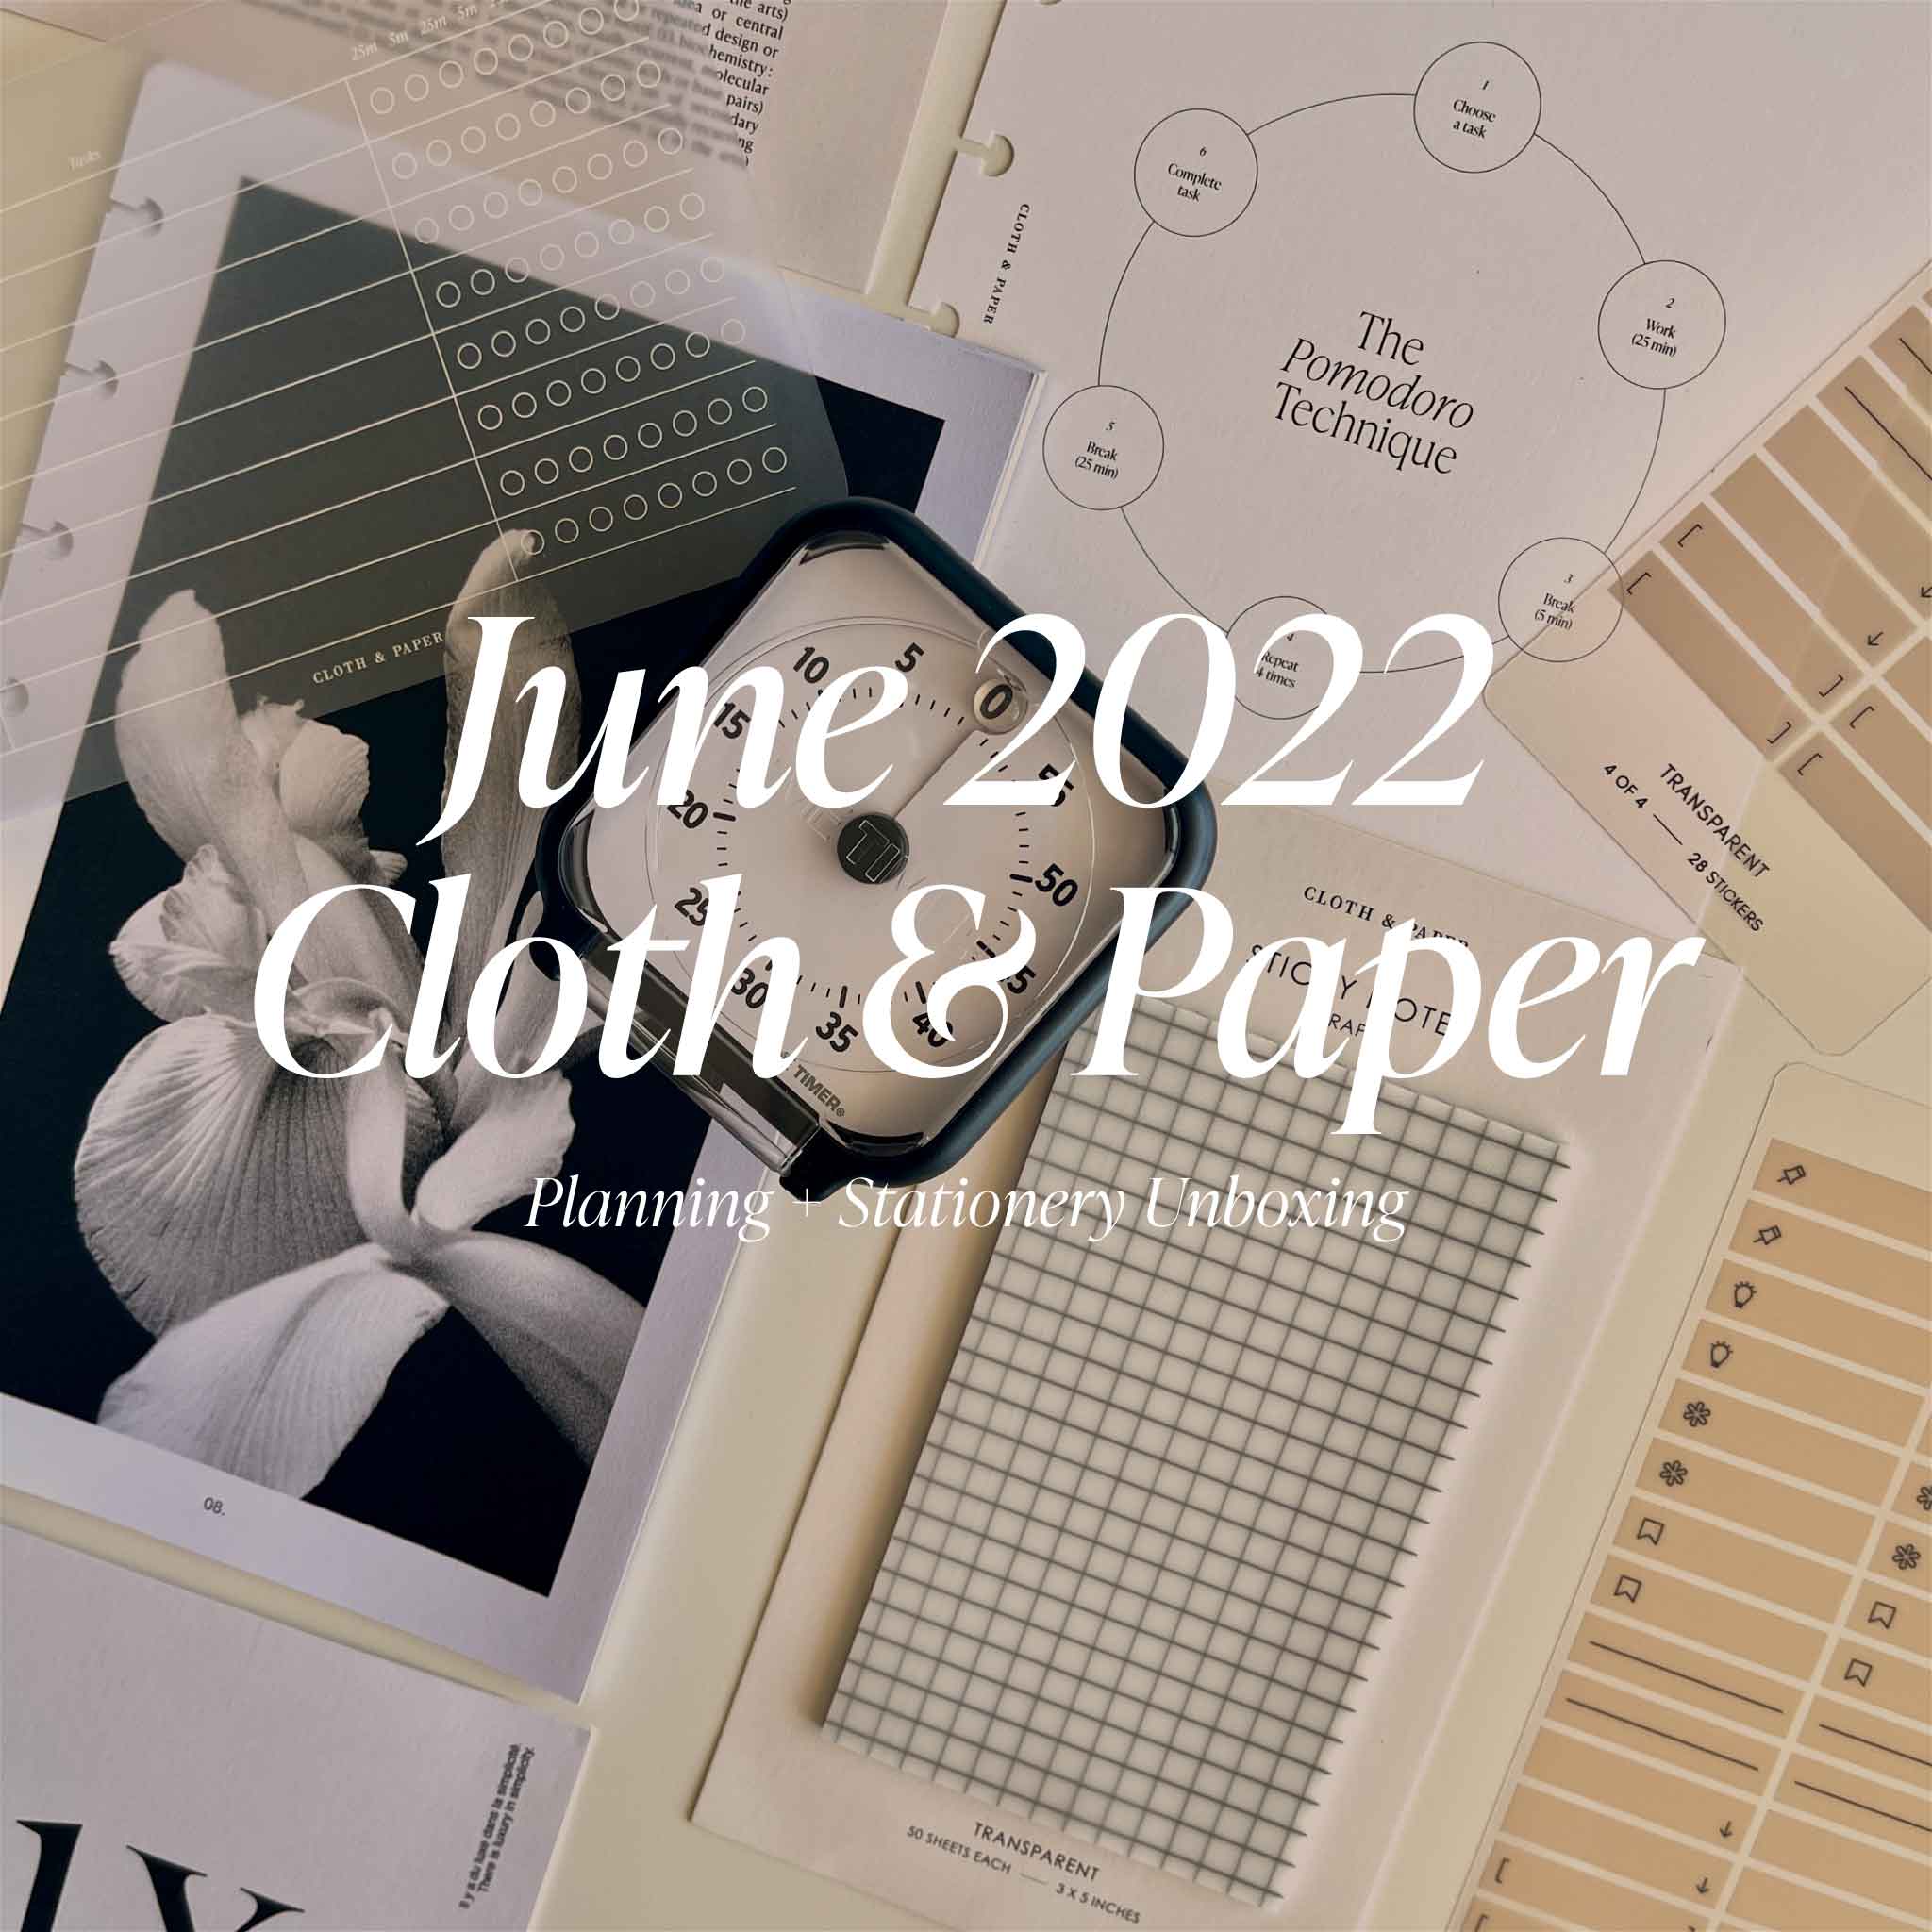 Kobaru Maru Liner  Cloth & Paper – CLOTH & PAPER